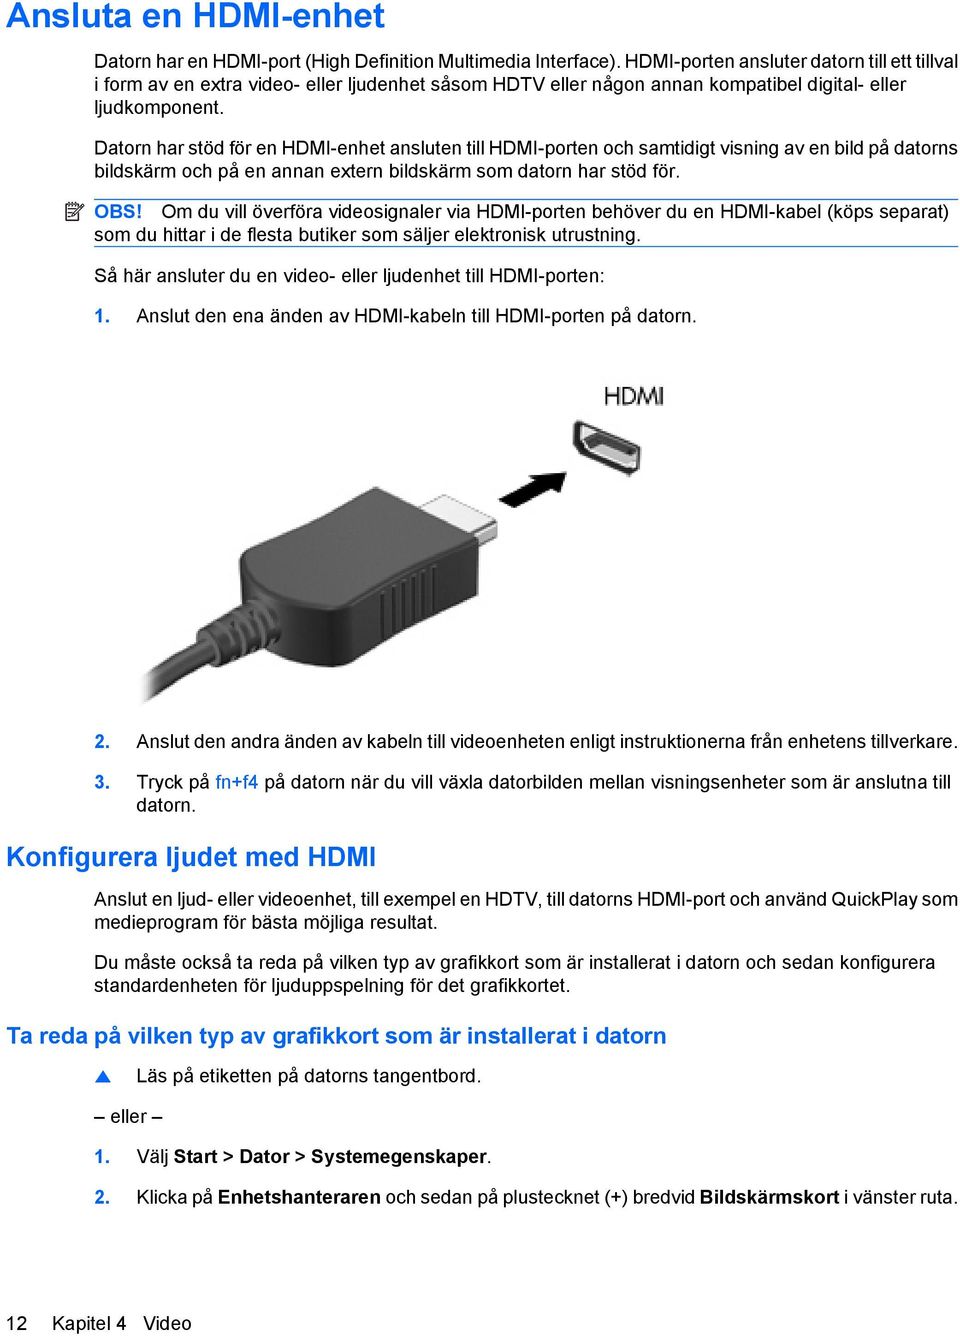 Datorn har stöd för en HDMI-enhet ansluten till HDMI-porten och samtidigt visning av en bild på datorns bildskärm och på en annan extern bildskärm som datorn har stöd för. OBS!